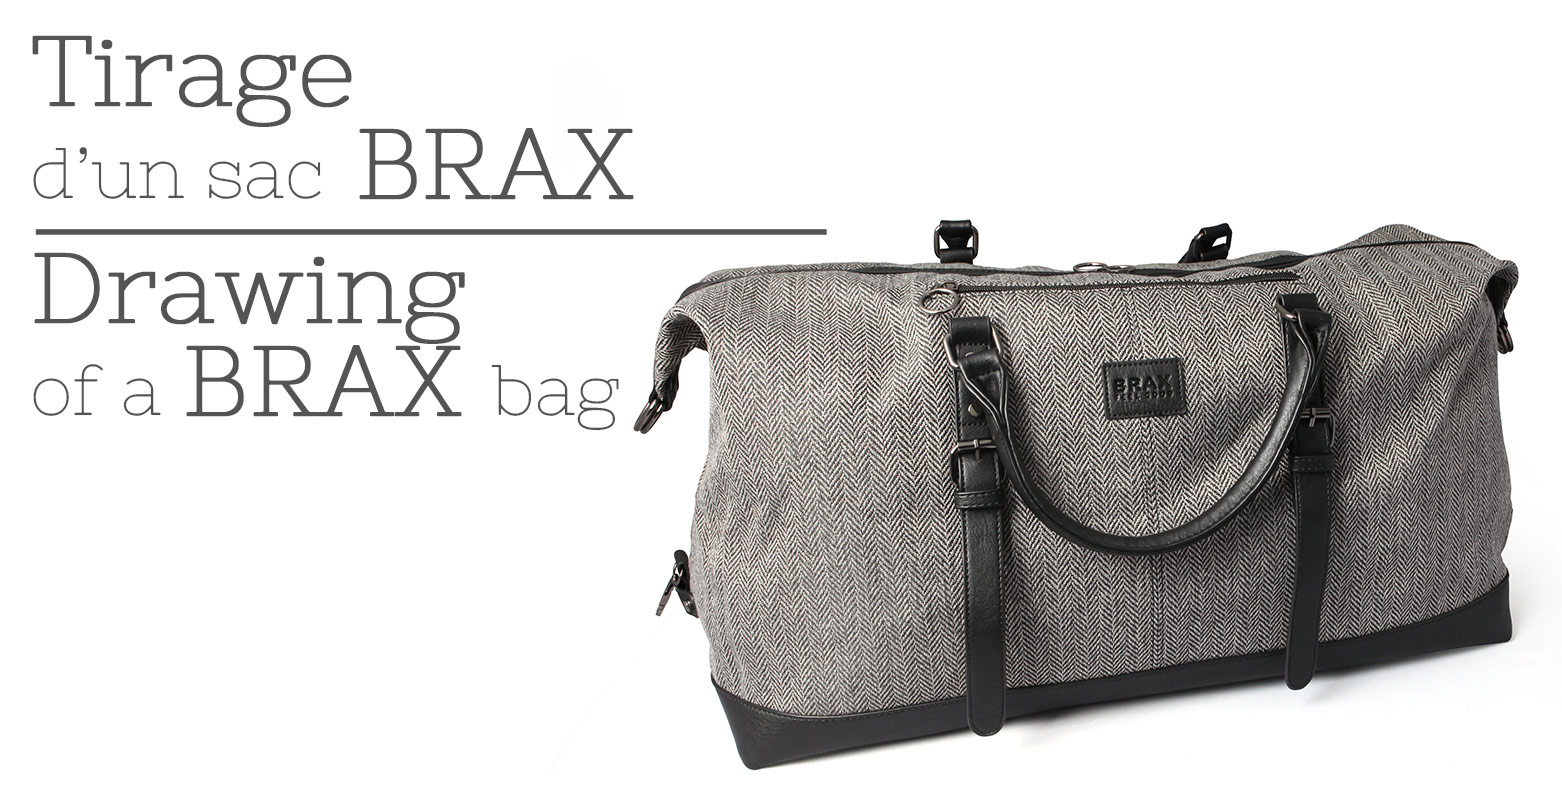 Brax bag winners